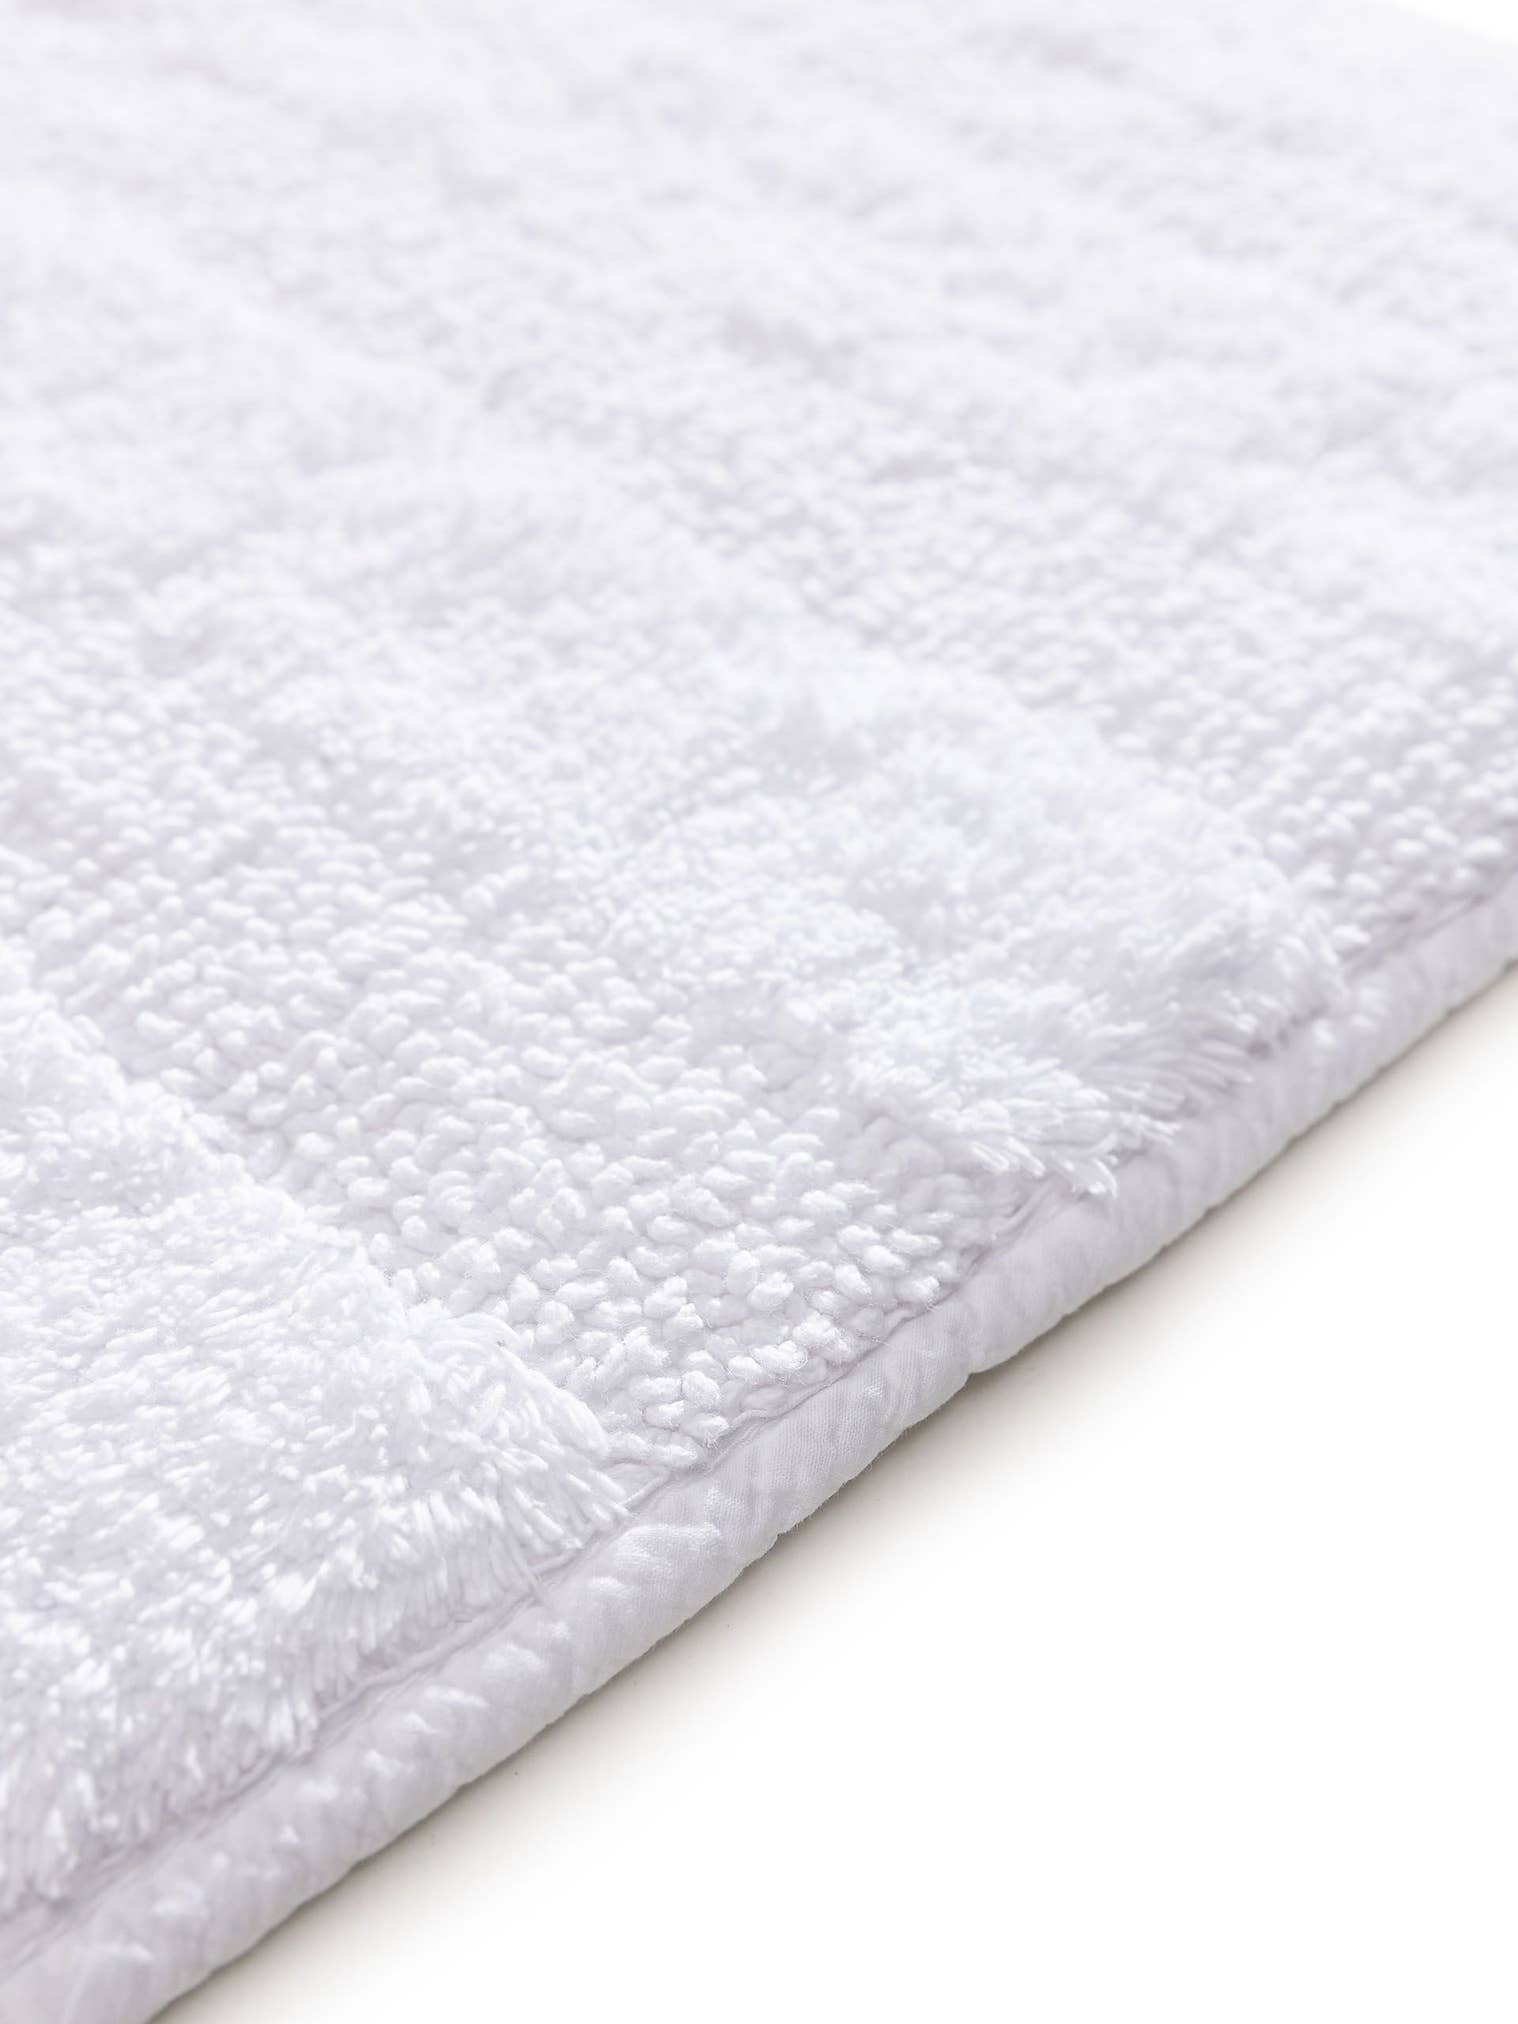 Teppich aus 100% Baumwolle in Weiß mit bis 5 mm hohem Flor von benuta Nest